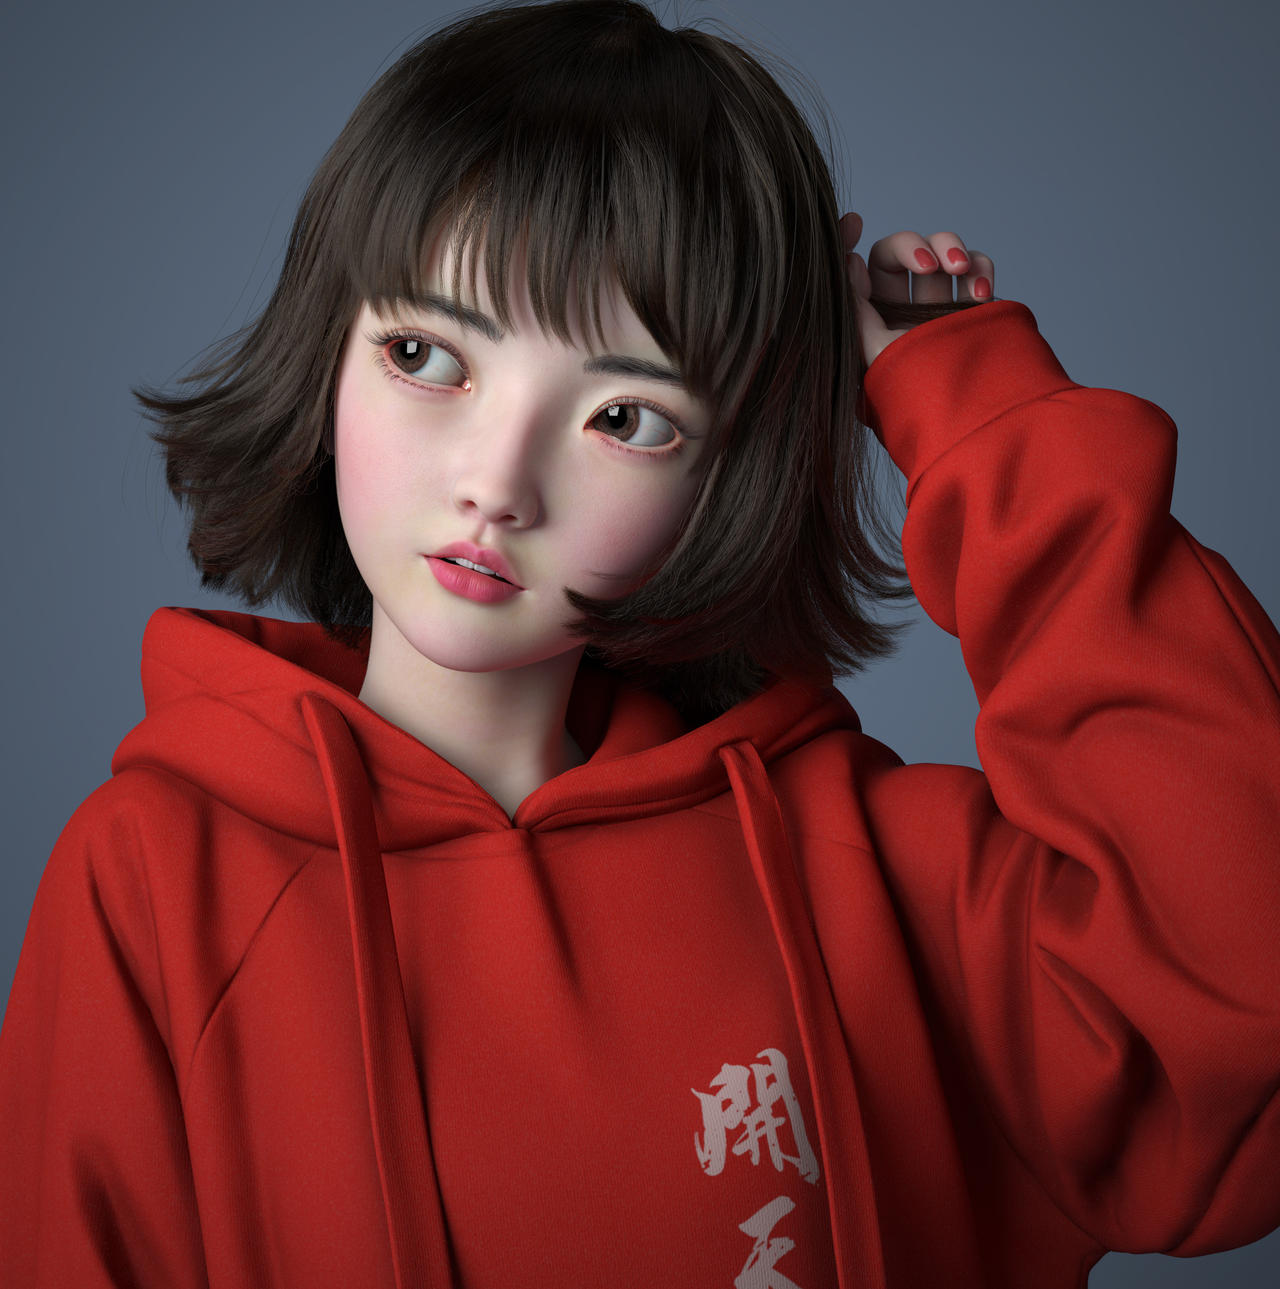 Kaitian Girl cartoon 3D model by nazimsh7 on DeviantArt